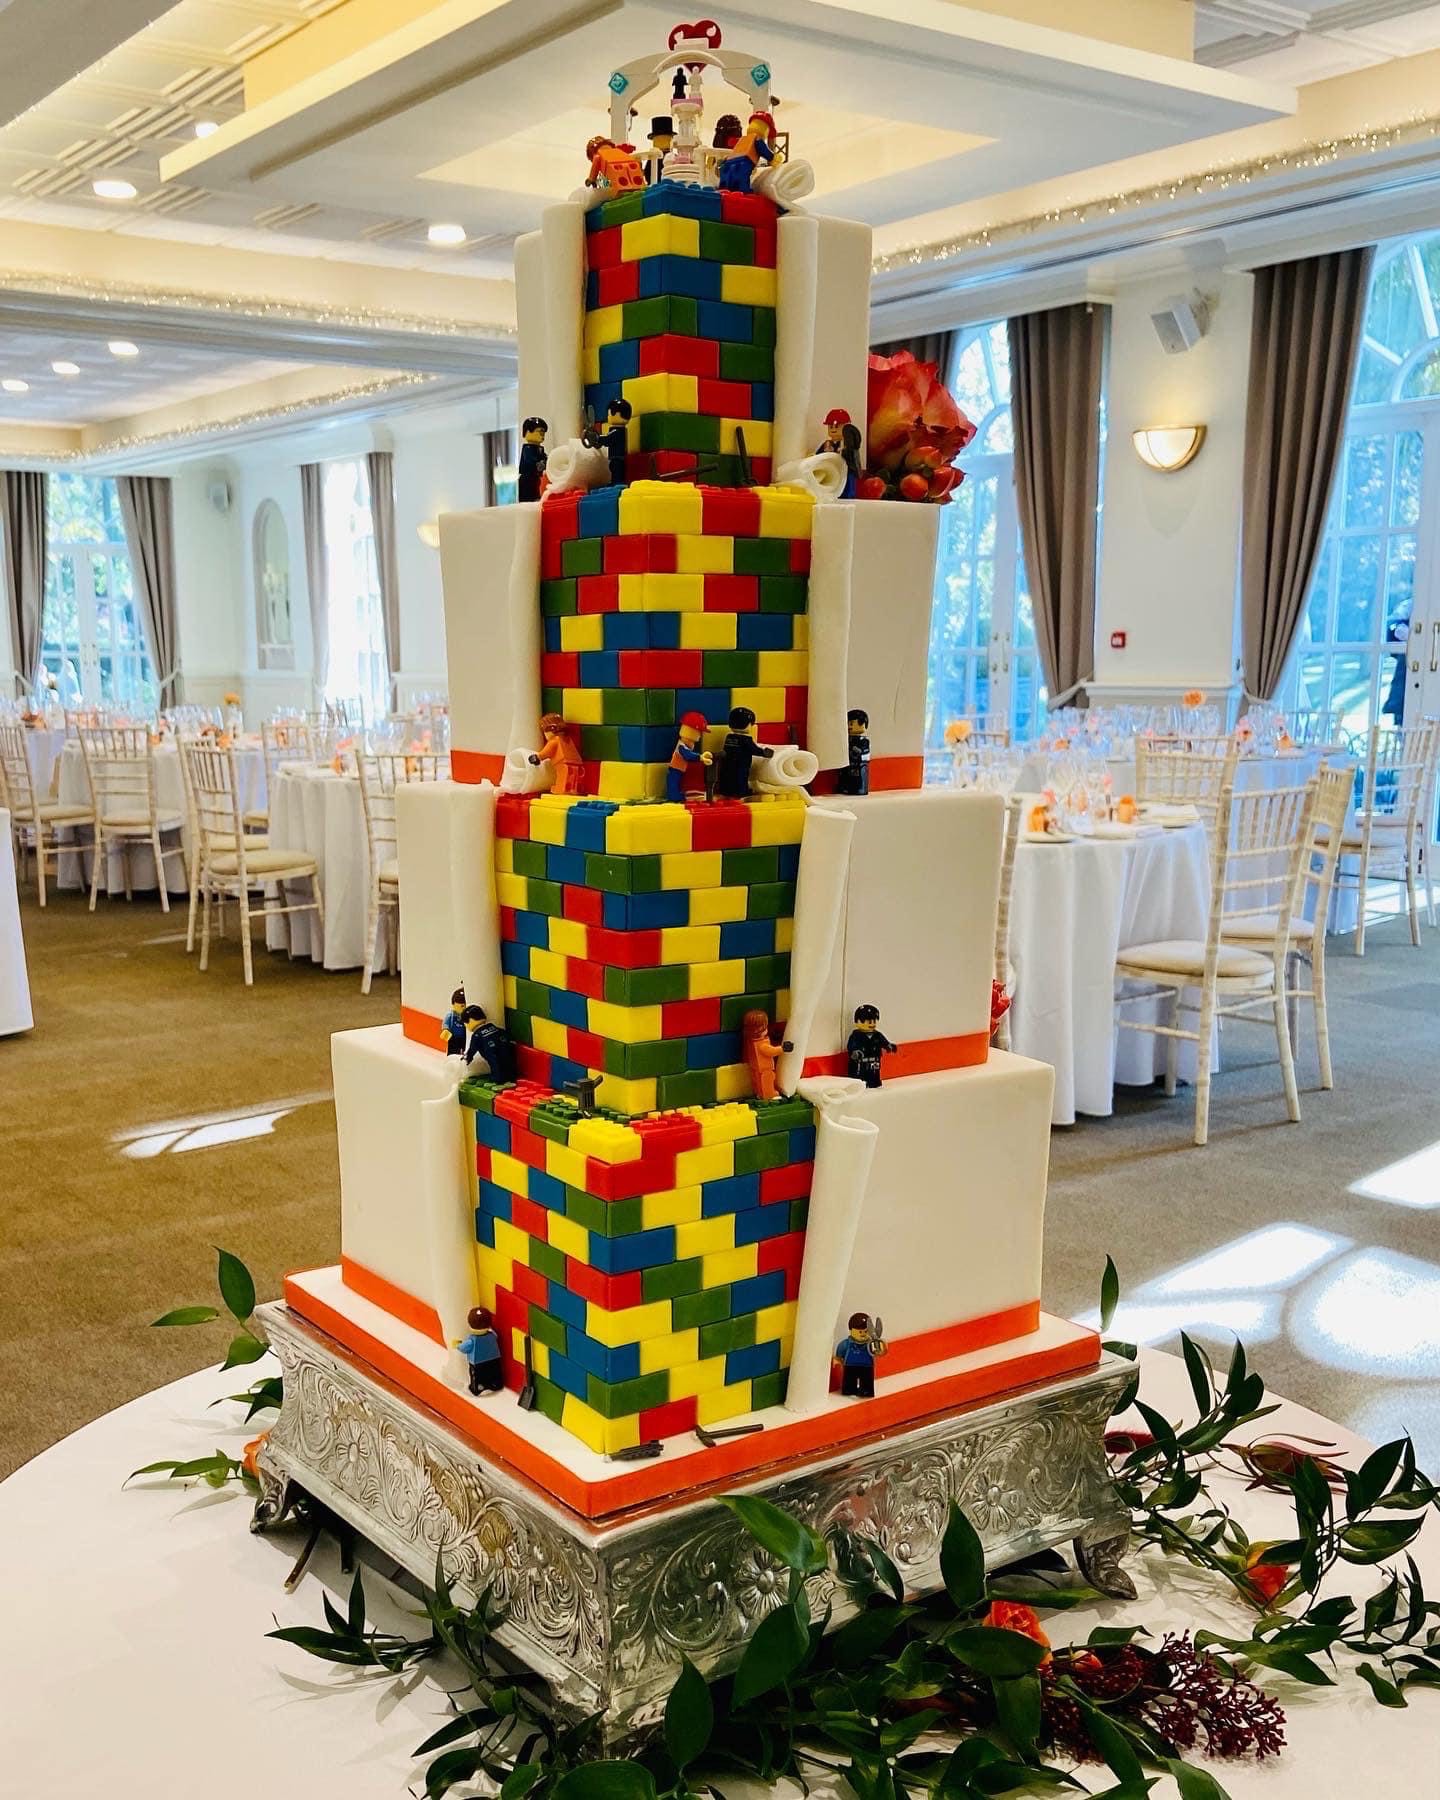 lego wedding cake - Bake To The Future - Unique Wedding Cakes - Unconventional Wedding